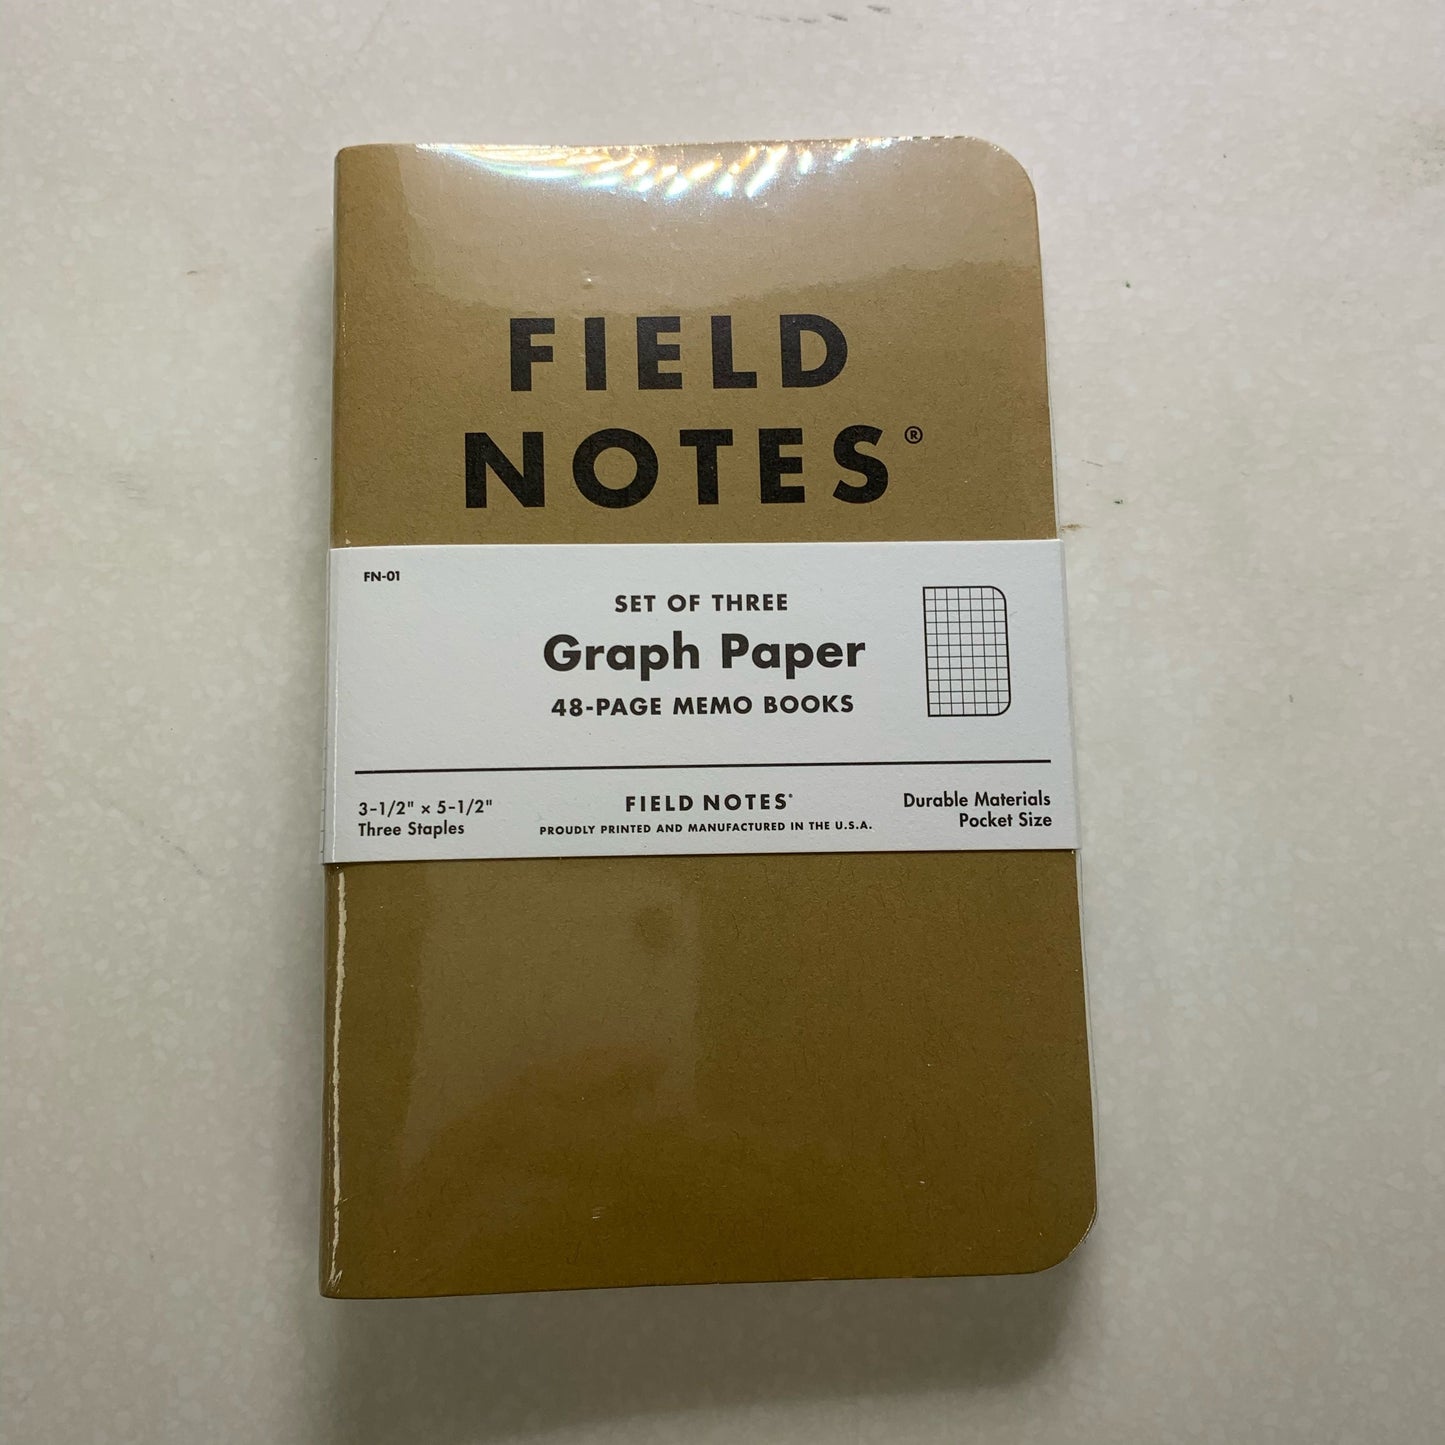 Field Notes Graph Paper Memo Books